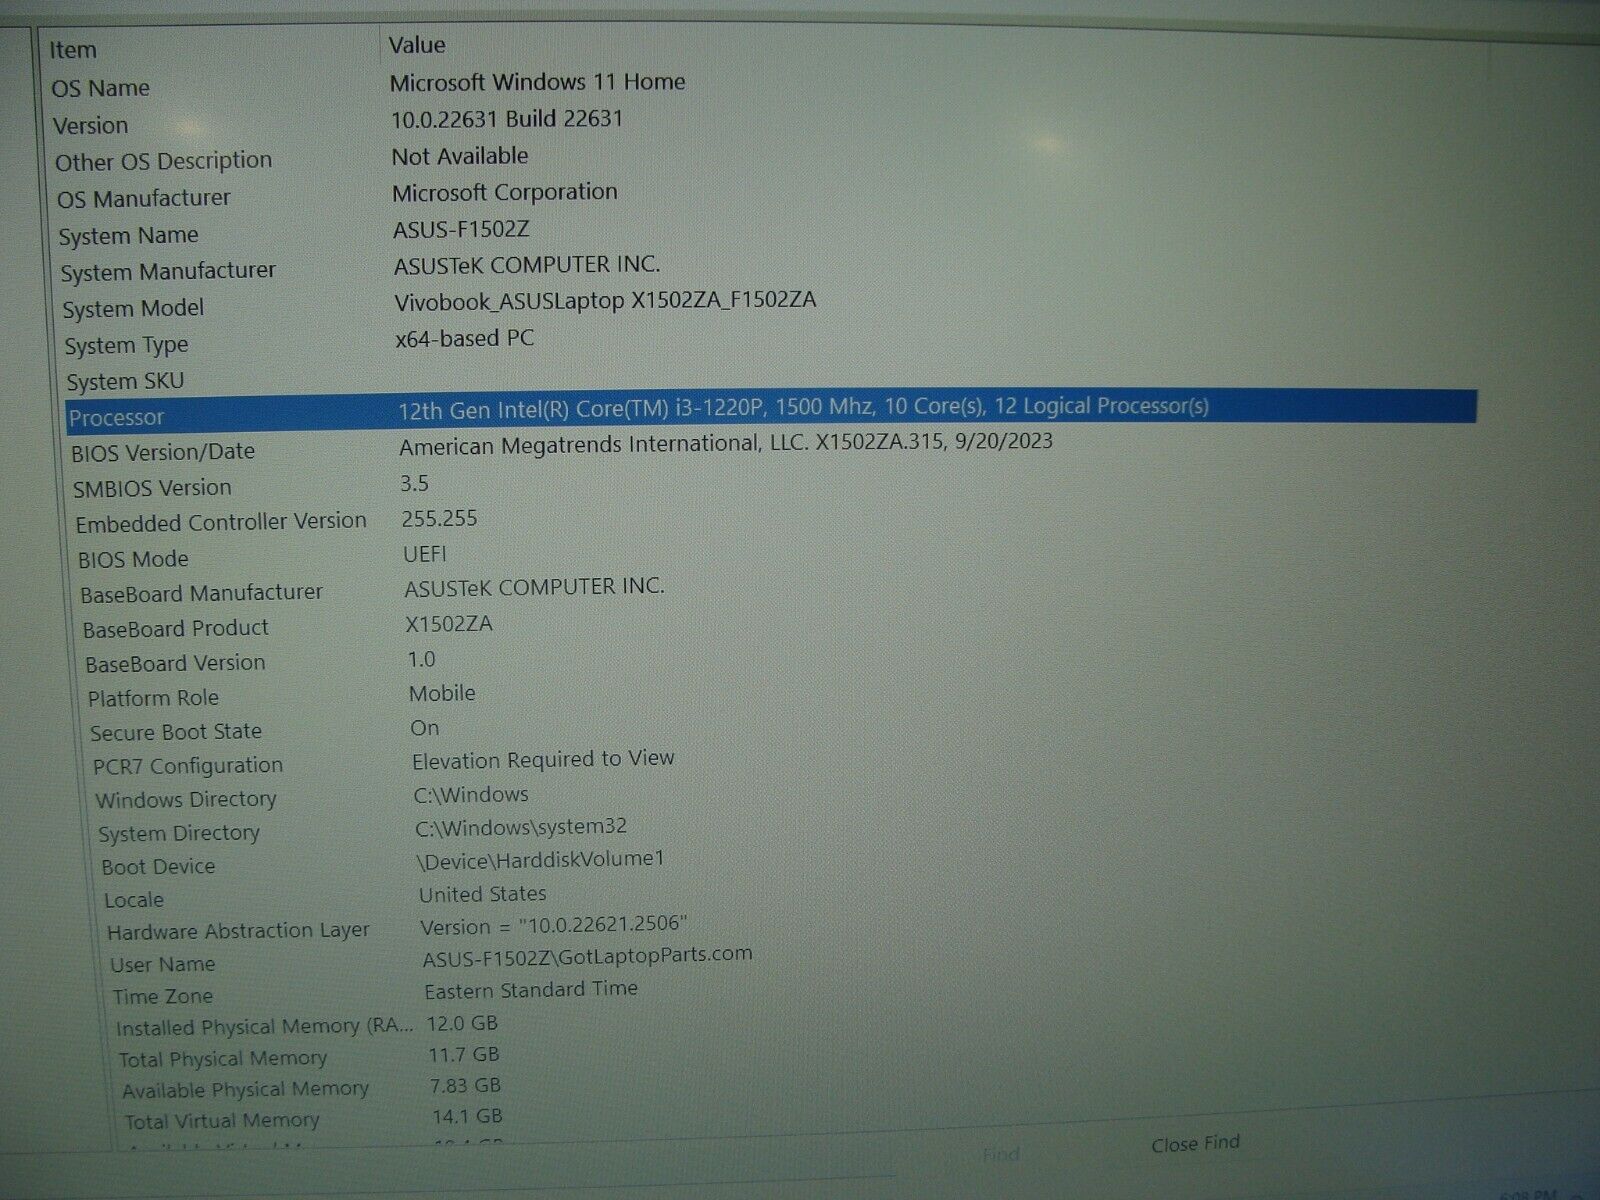 Grade A Asus VivoBook F1502ZA 15.6FHD Intel i3-1220P 1.5GHz 12GB 256GB SSD